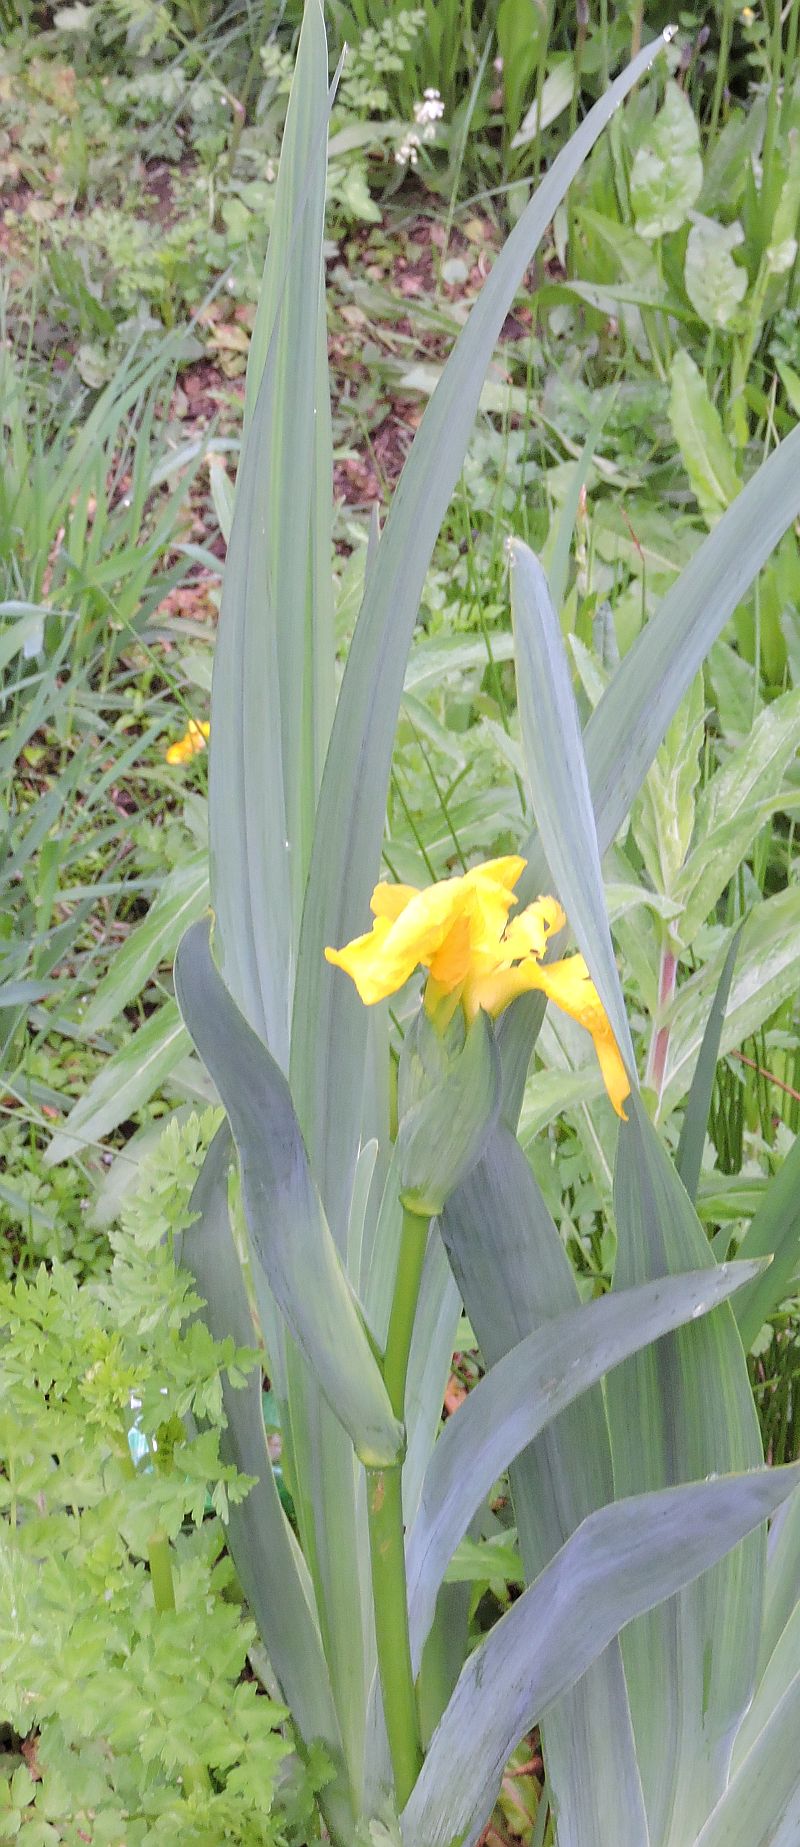 Yellow Flag Iris